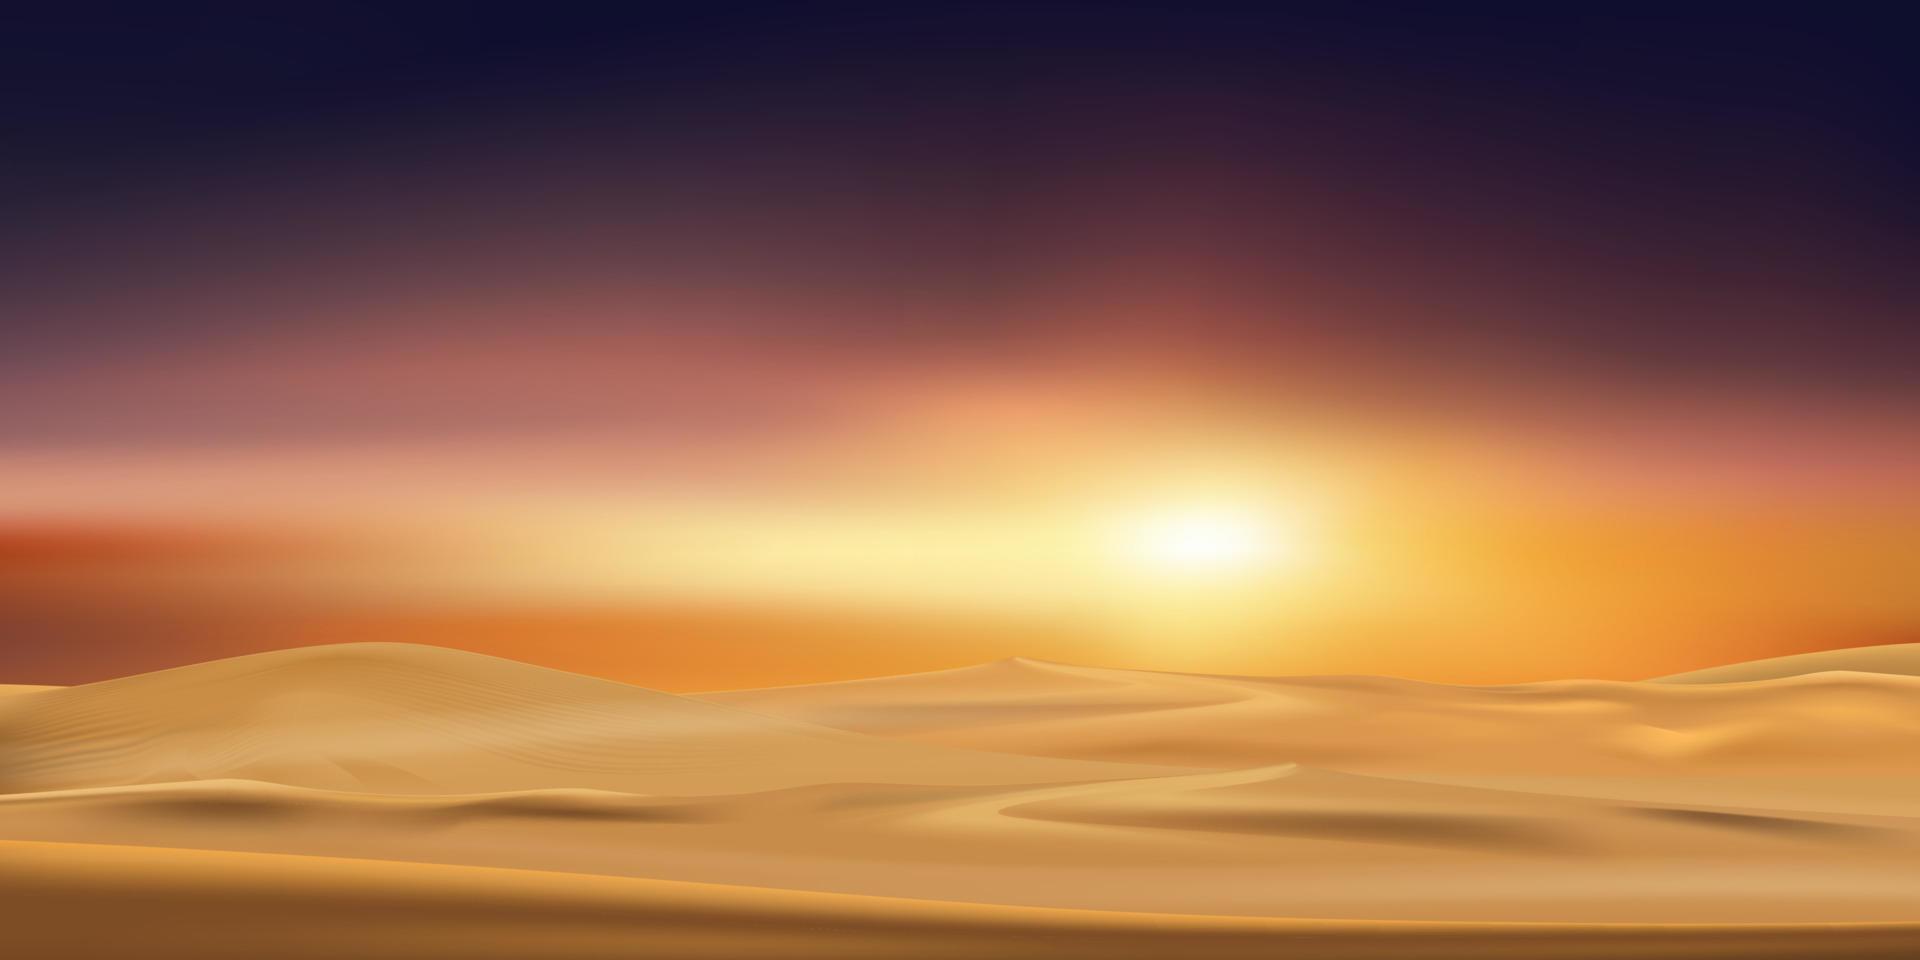 tramonto al paesaggio desertico con dune di sabbia con cielo arancione in serata, illustrazione vettoriale bellissima natura con alba al mattino, sfondo banner per islam, musulmano per eid mubarak, eid al fitr